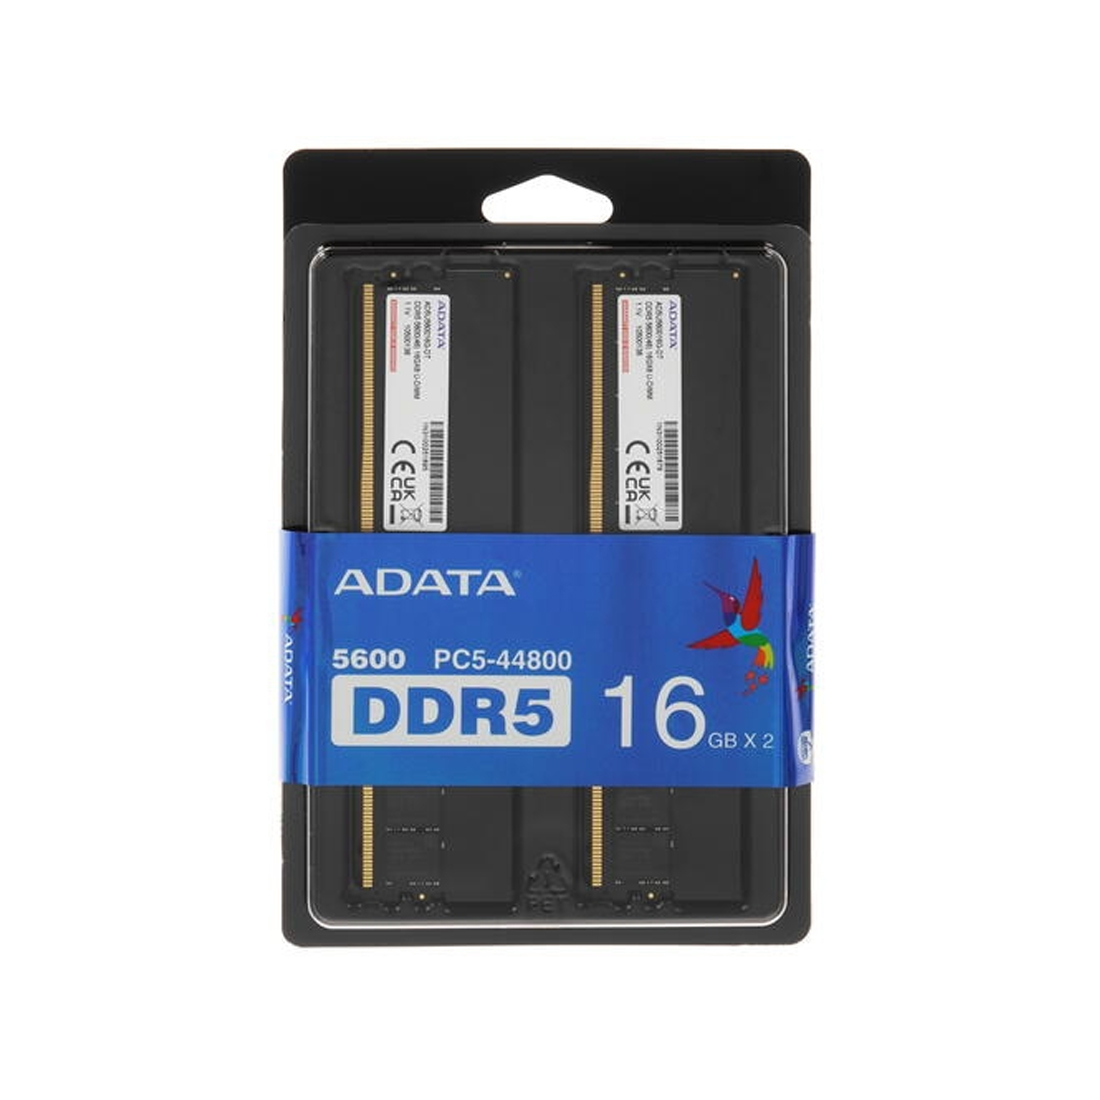 Комплект модулей памяти ADATA AD5U560016G-DT DDR5 32GB (Kit 2x16GB) 5600MHz